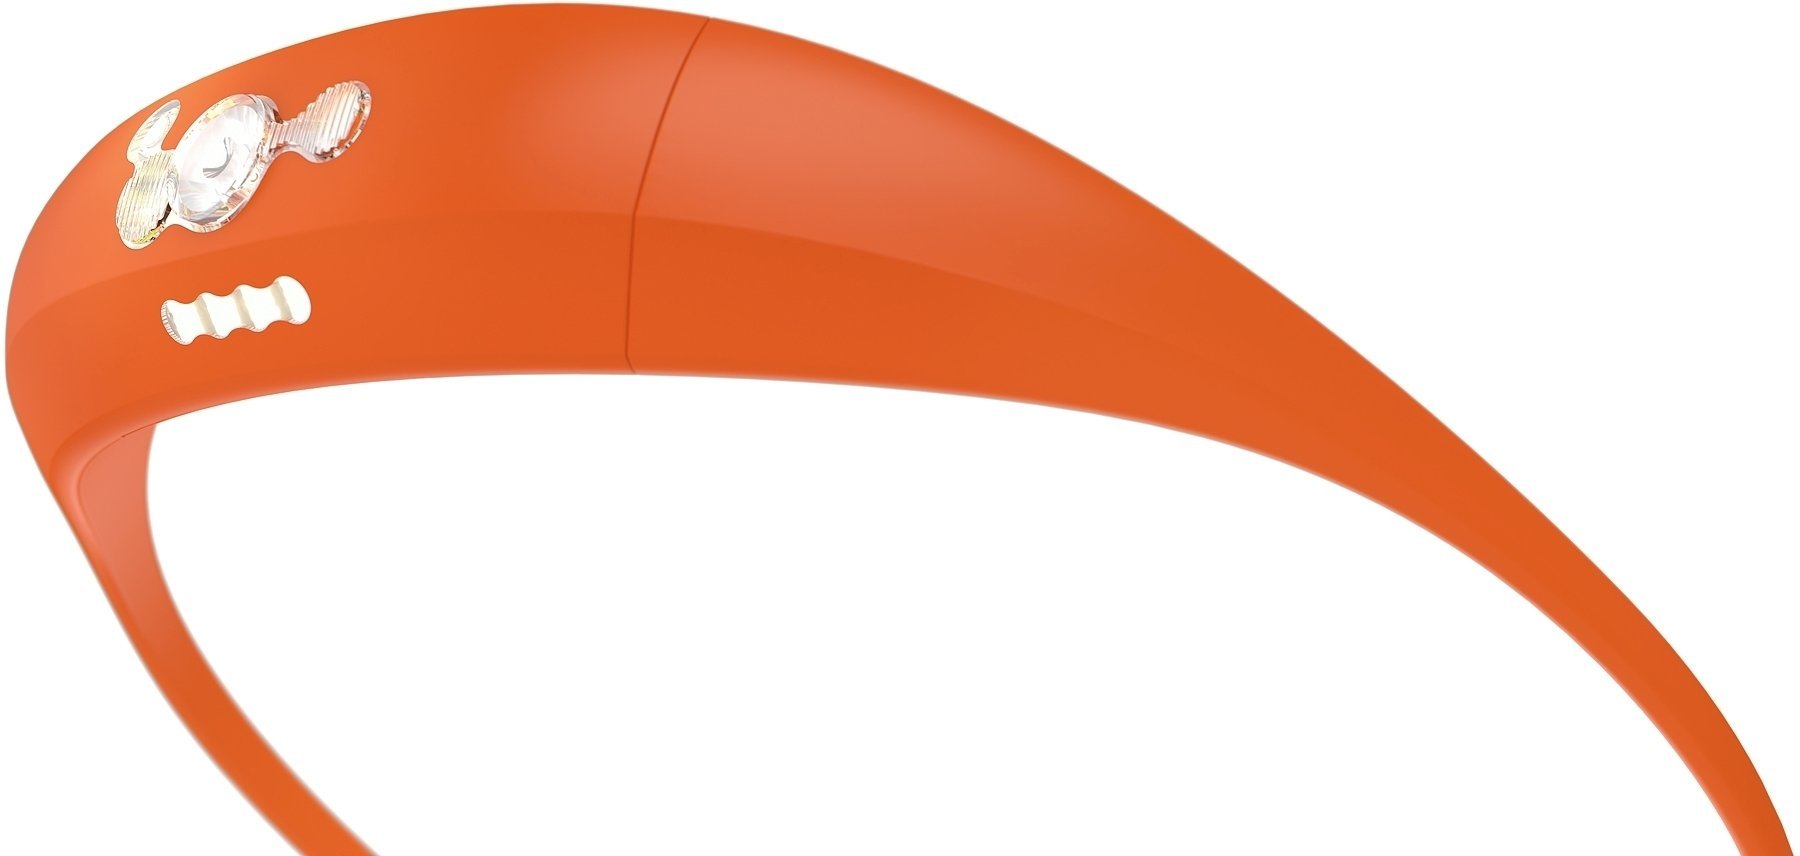 Stirnlampe batteriebetrieben Knog Bandicoot Orange 100 lm Kopflampe Stirnlampe batteriebetrieben